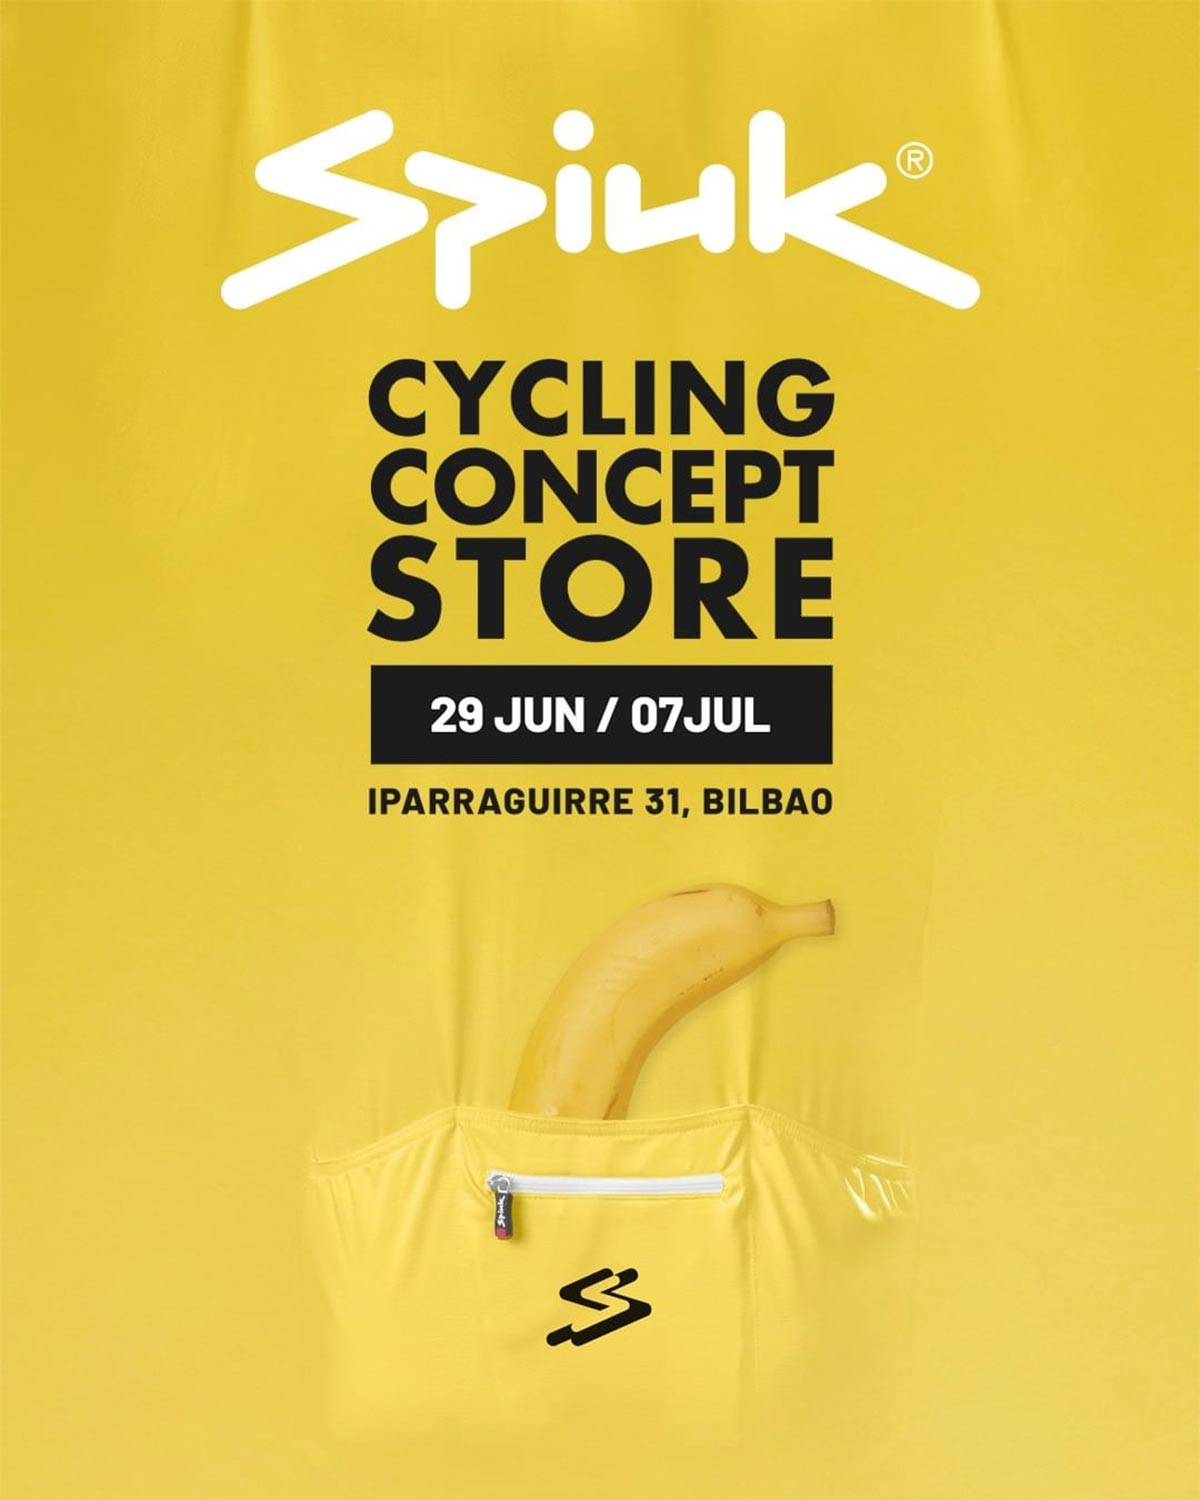 Spiuk anuncia la apertura de su primera Cycling Concept Store, una tienda a pie de calle y solo abierta durante una semana